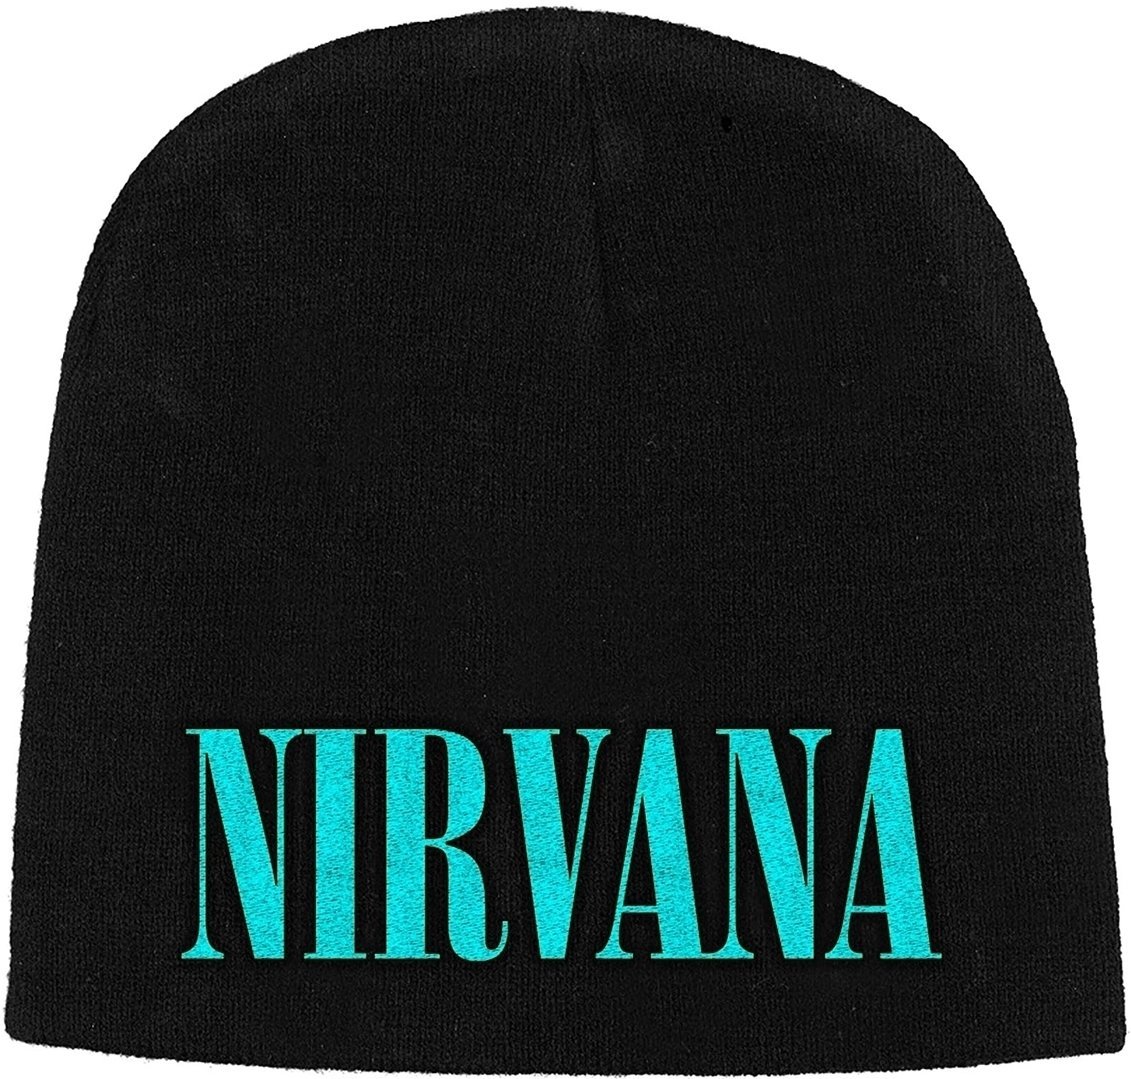 шапка Nirvana шапка Logo Черeн